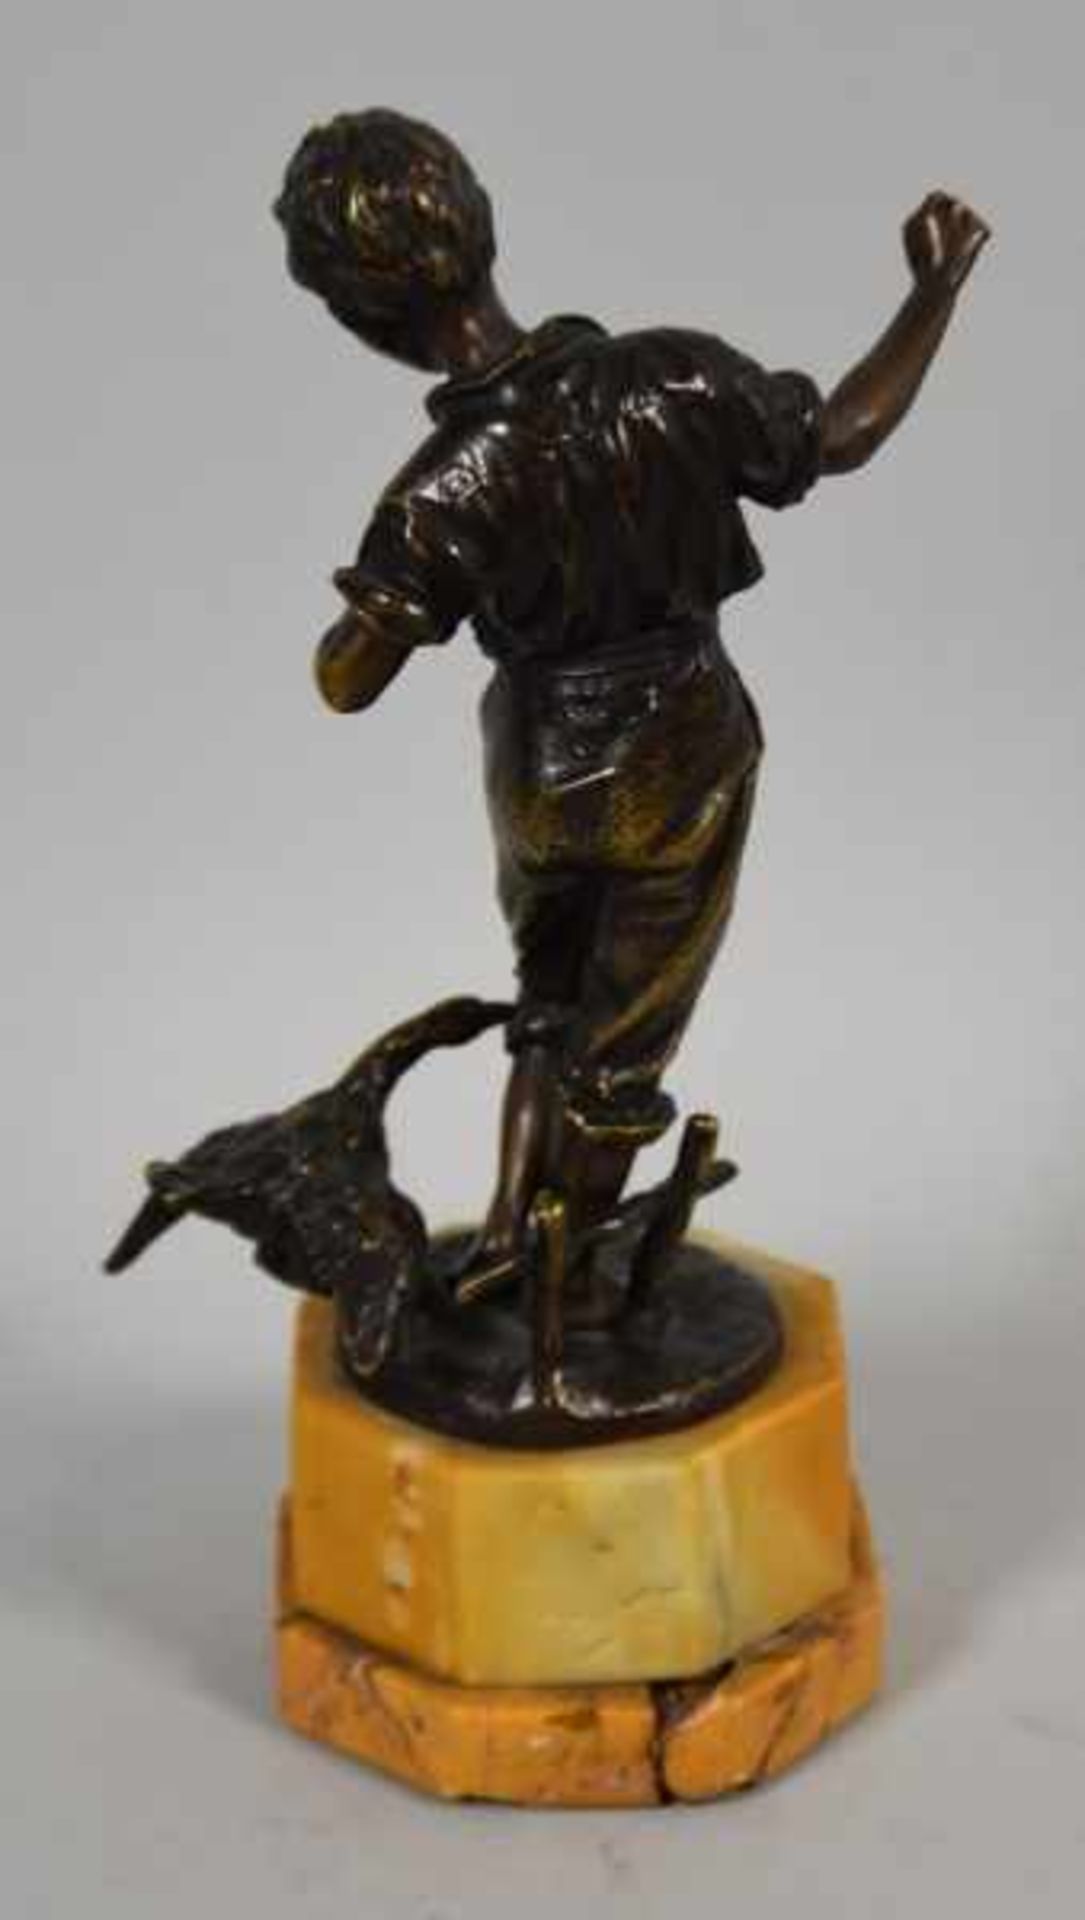 HIRTENJUNGE mit zwickender Gans, Bronze braun patiniert, auf runder Plinthe mit Monogramm "SB", - Bild 3 aus 3